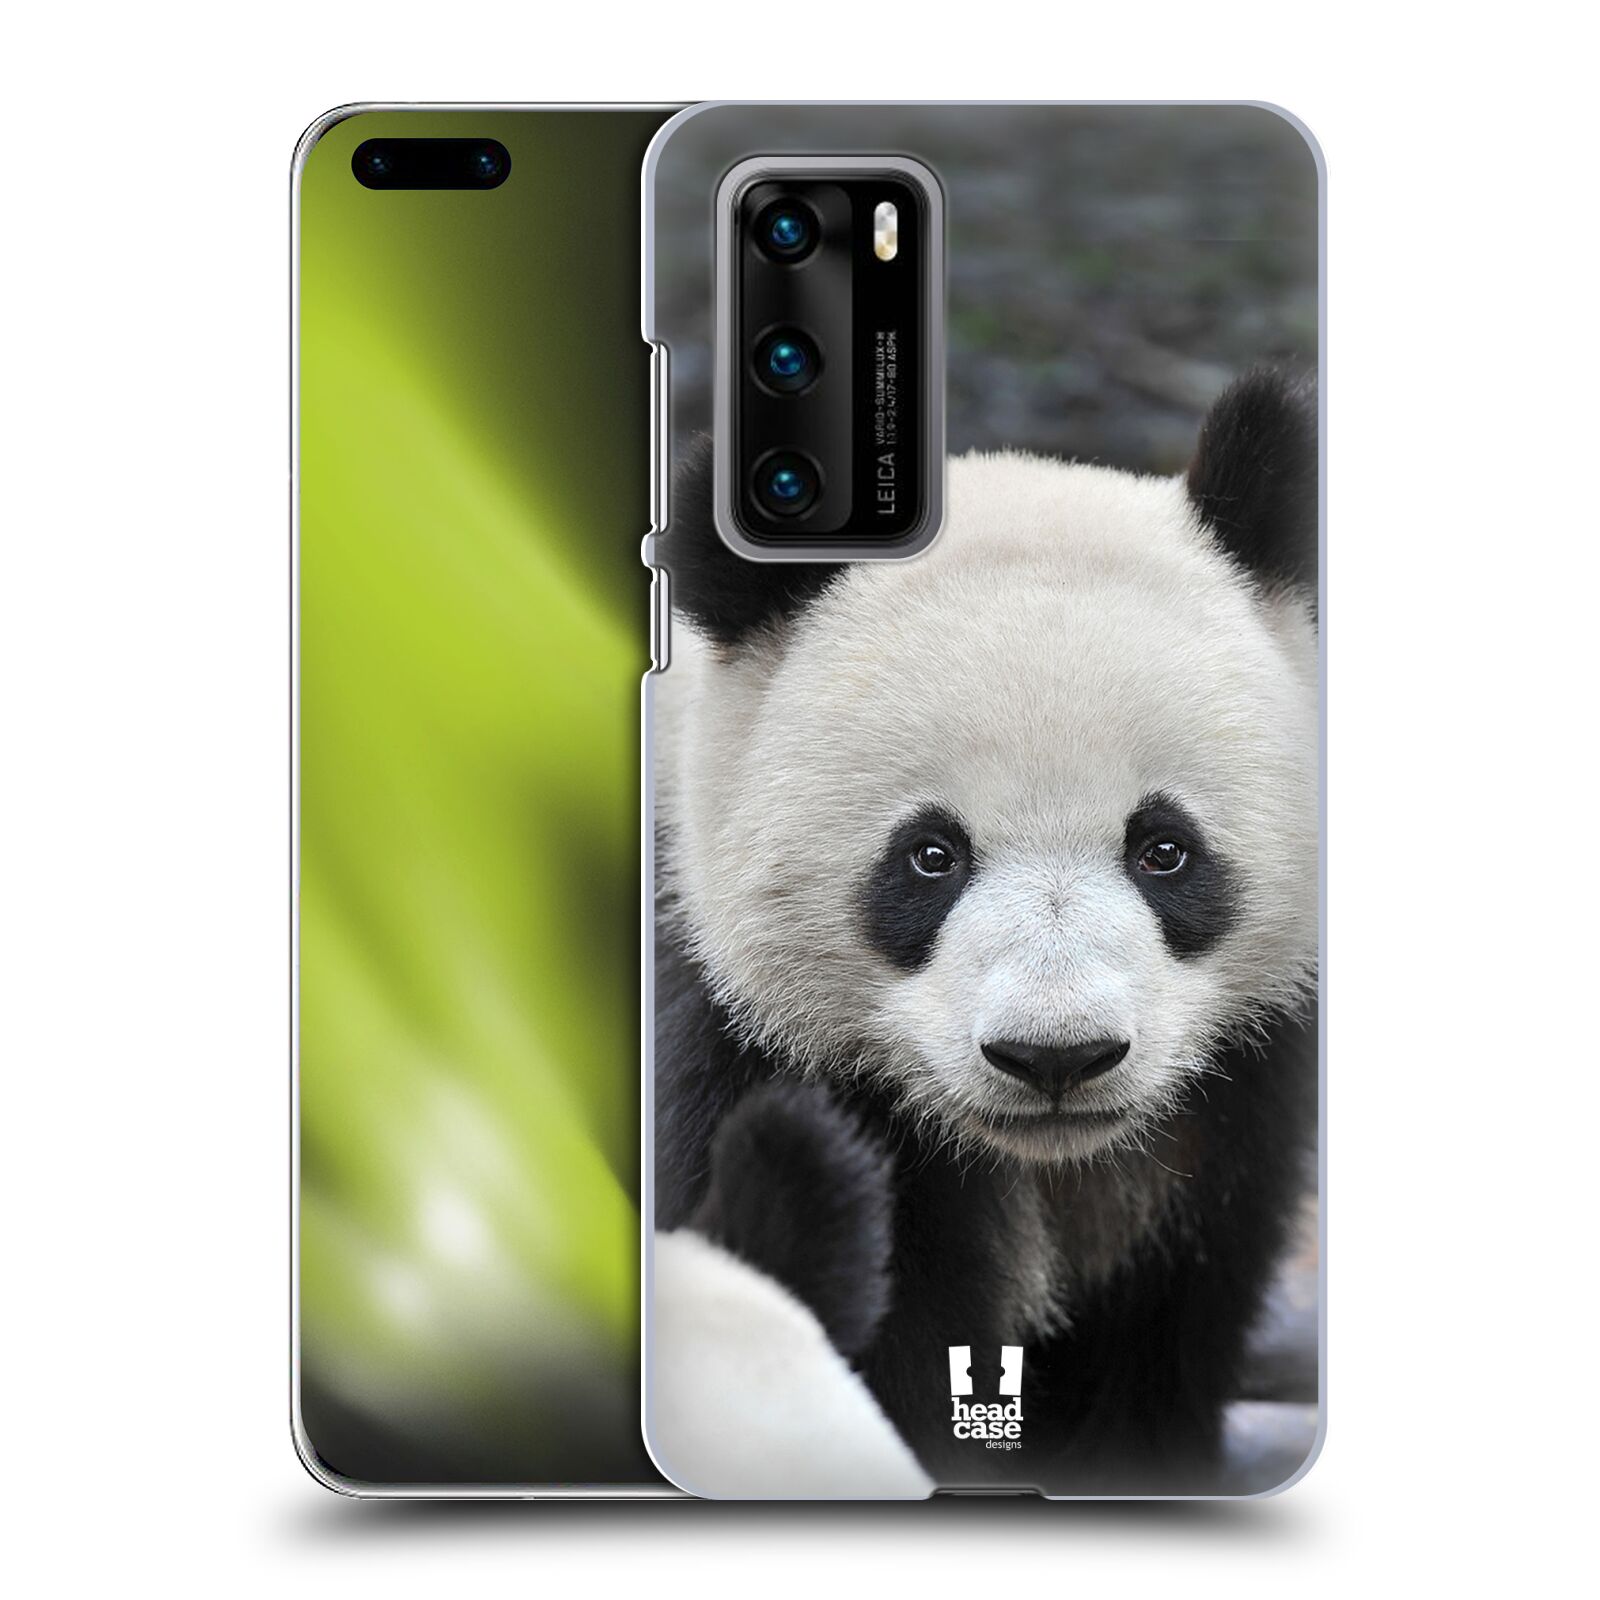 Zadní obal pro mobil Huawei P40 - HEAD CASE - Svět zvířat medvěd panda